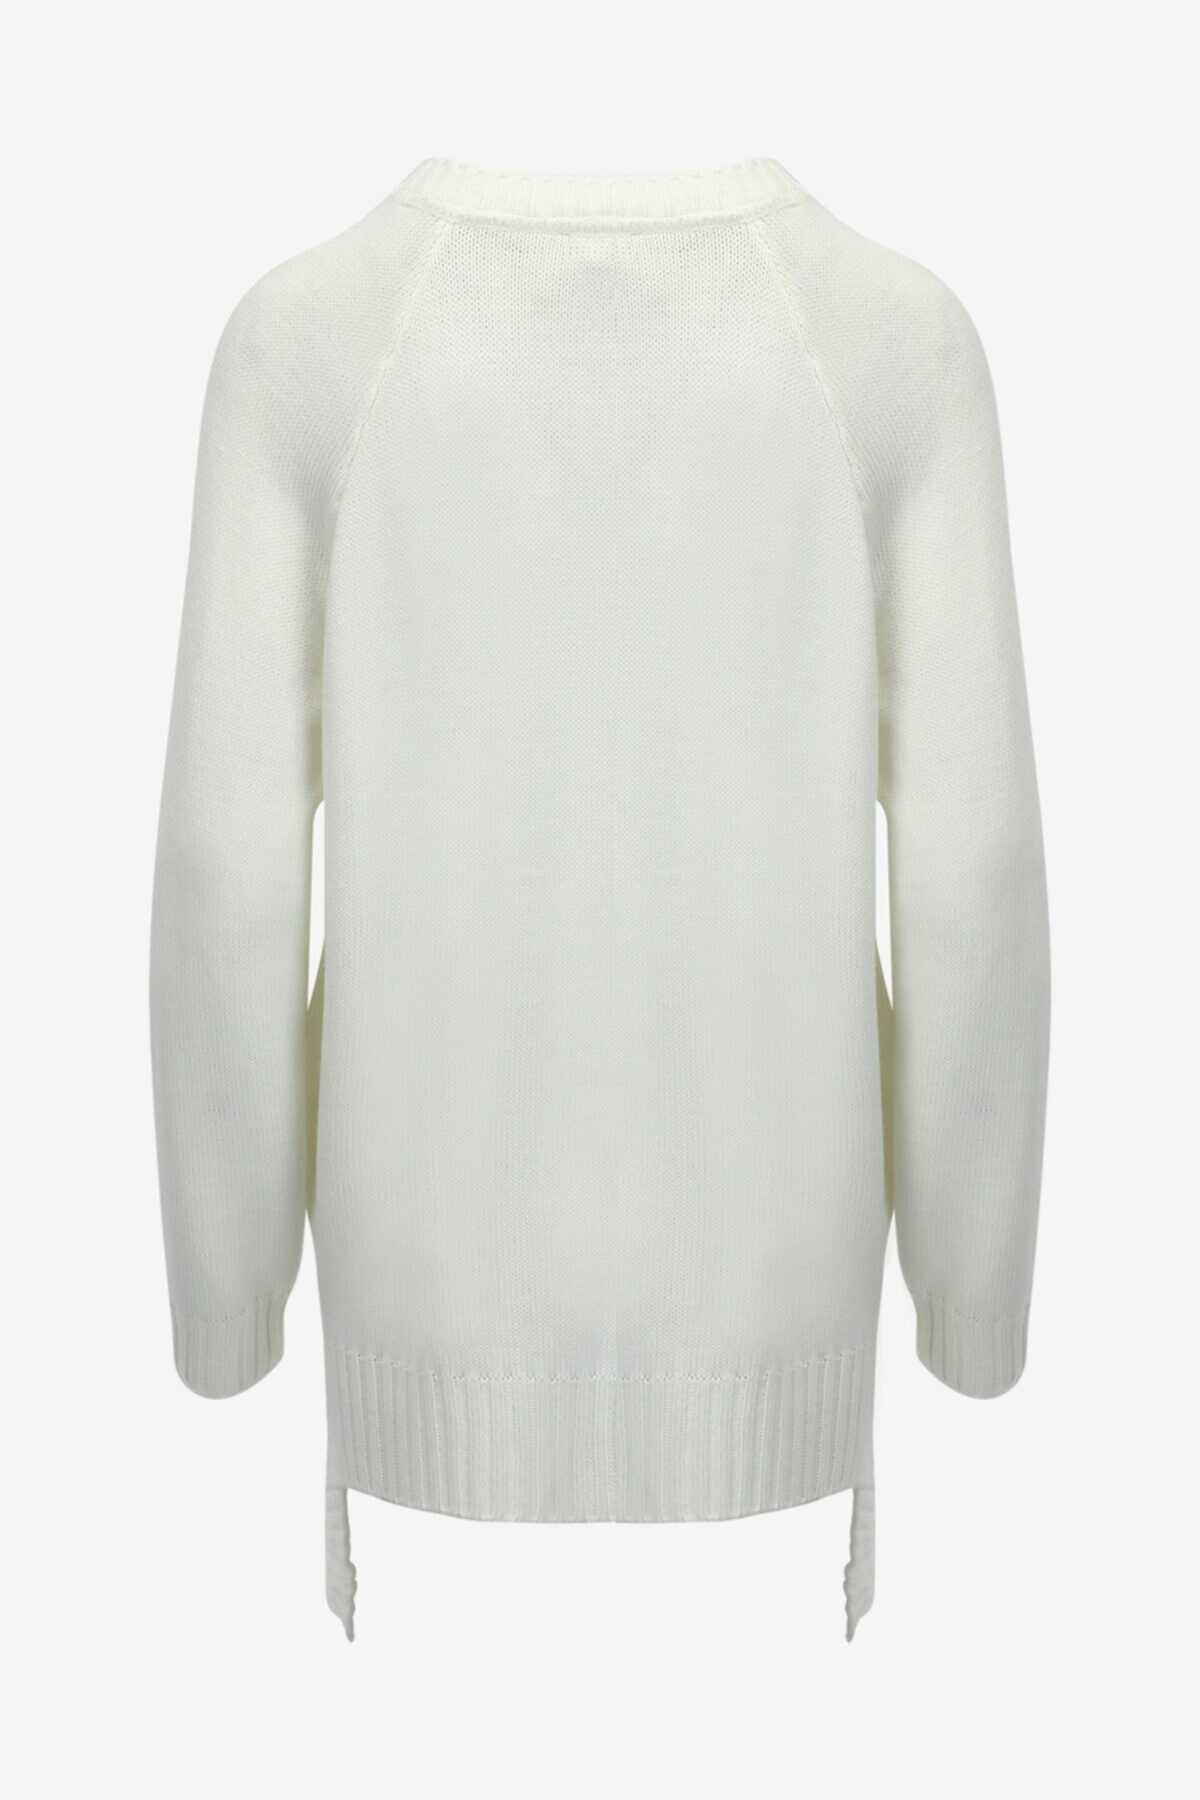 ژاکت بافت زنانه یقه 7 آستین بلند طرح دار سفید برند W Collection